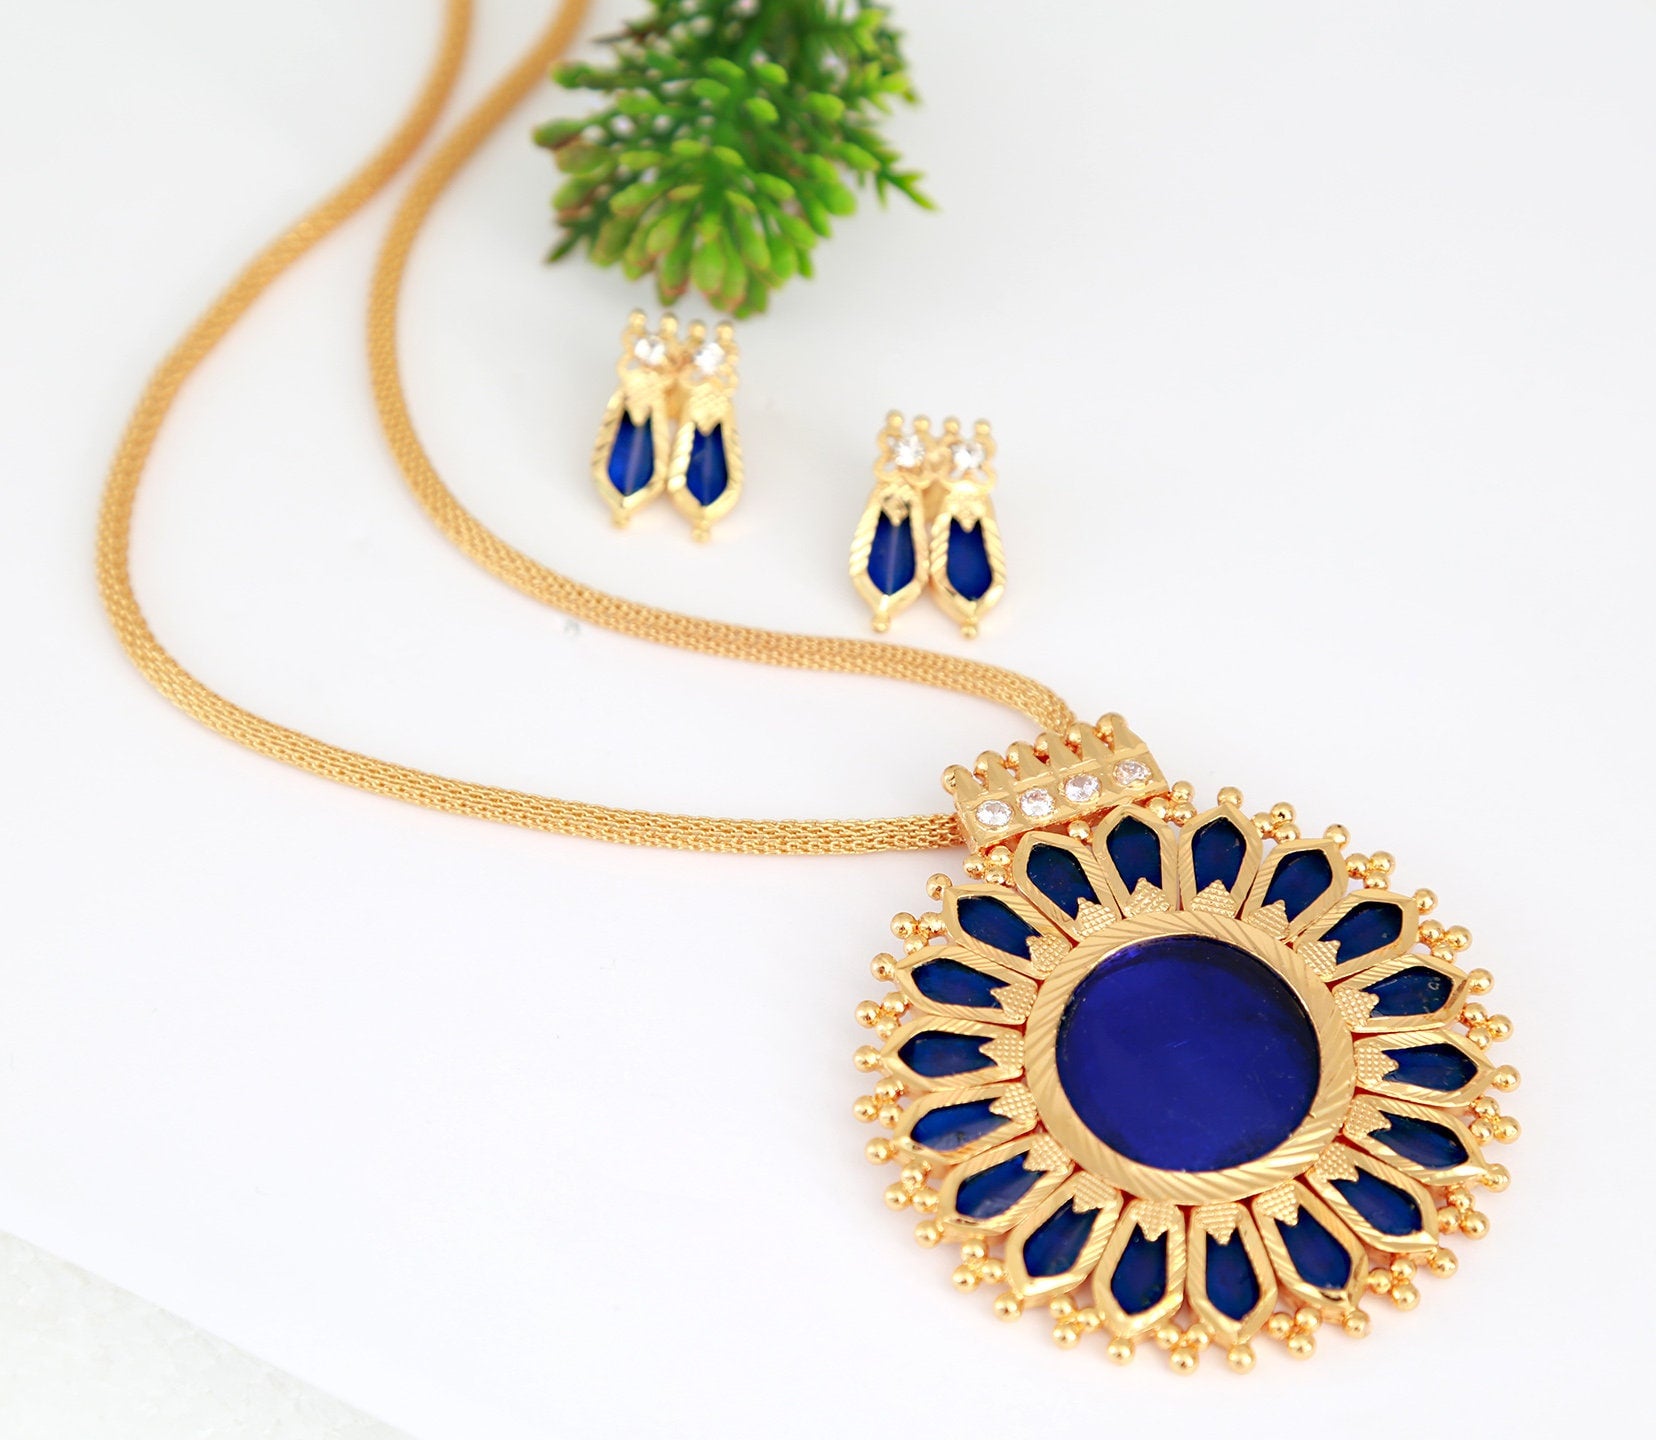 Indian Temple jewelry Nagapada pendant designs | Gold Green Palakka Kerala Style Pendant Pathakkam | Gold Plated Traditional Hindu Jewelry